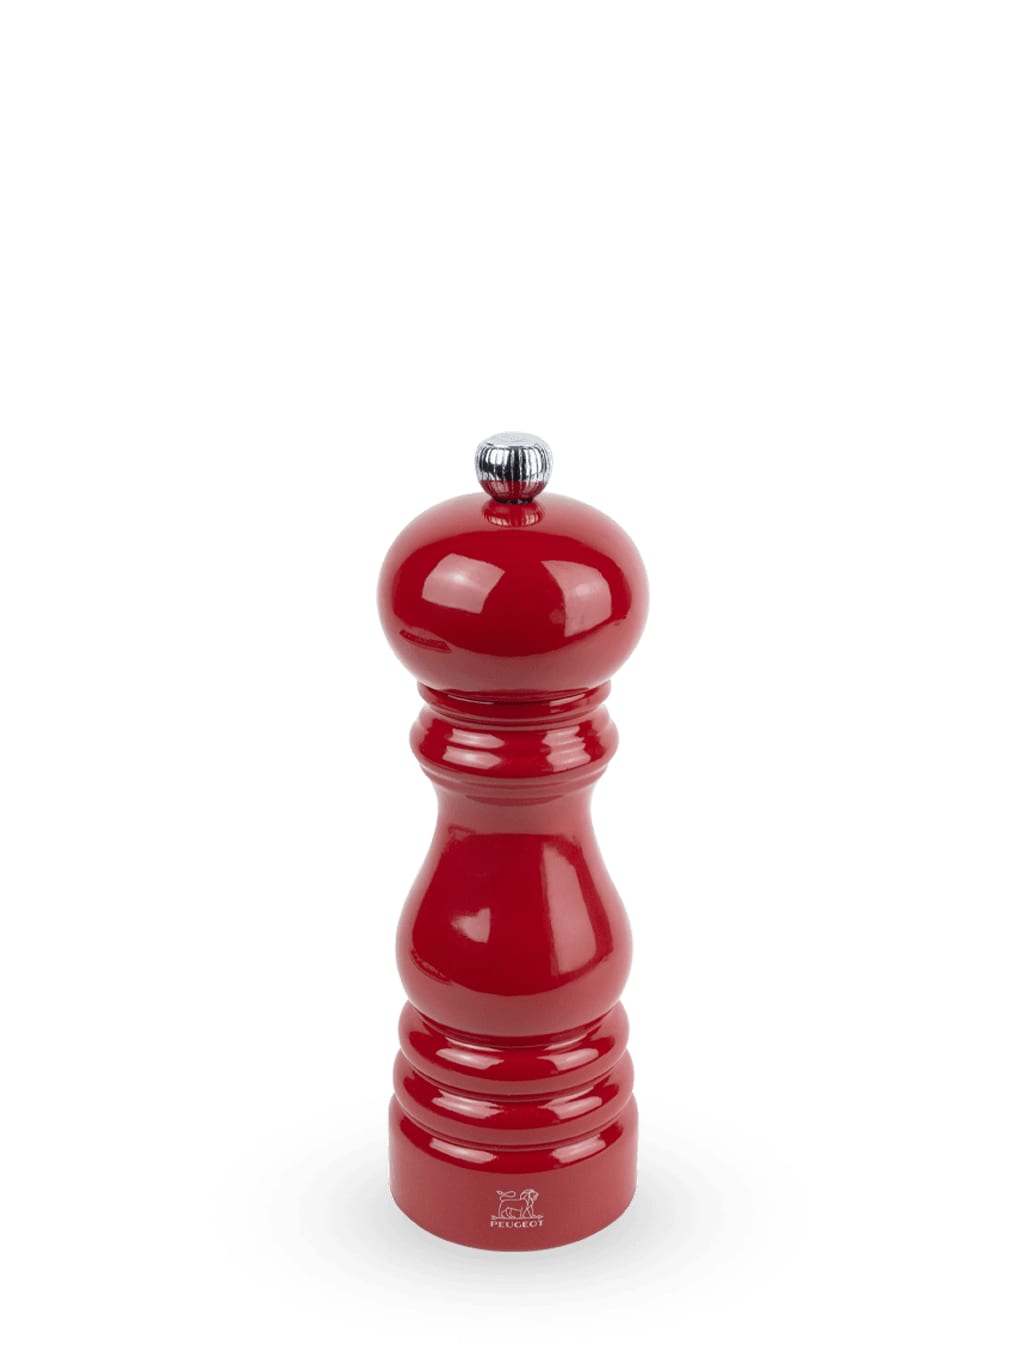 moulin à sel manuel en bois, laqué rouge passion, 18 cm - 7in